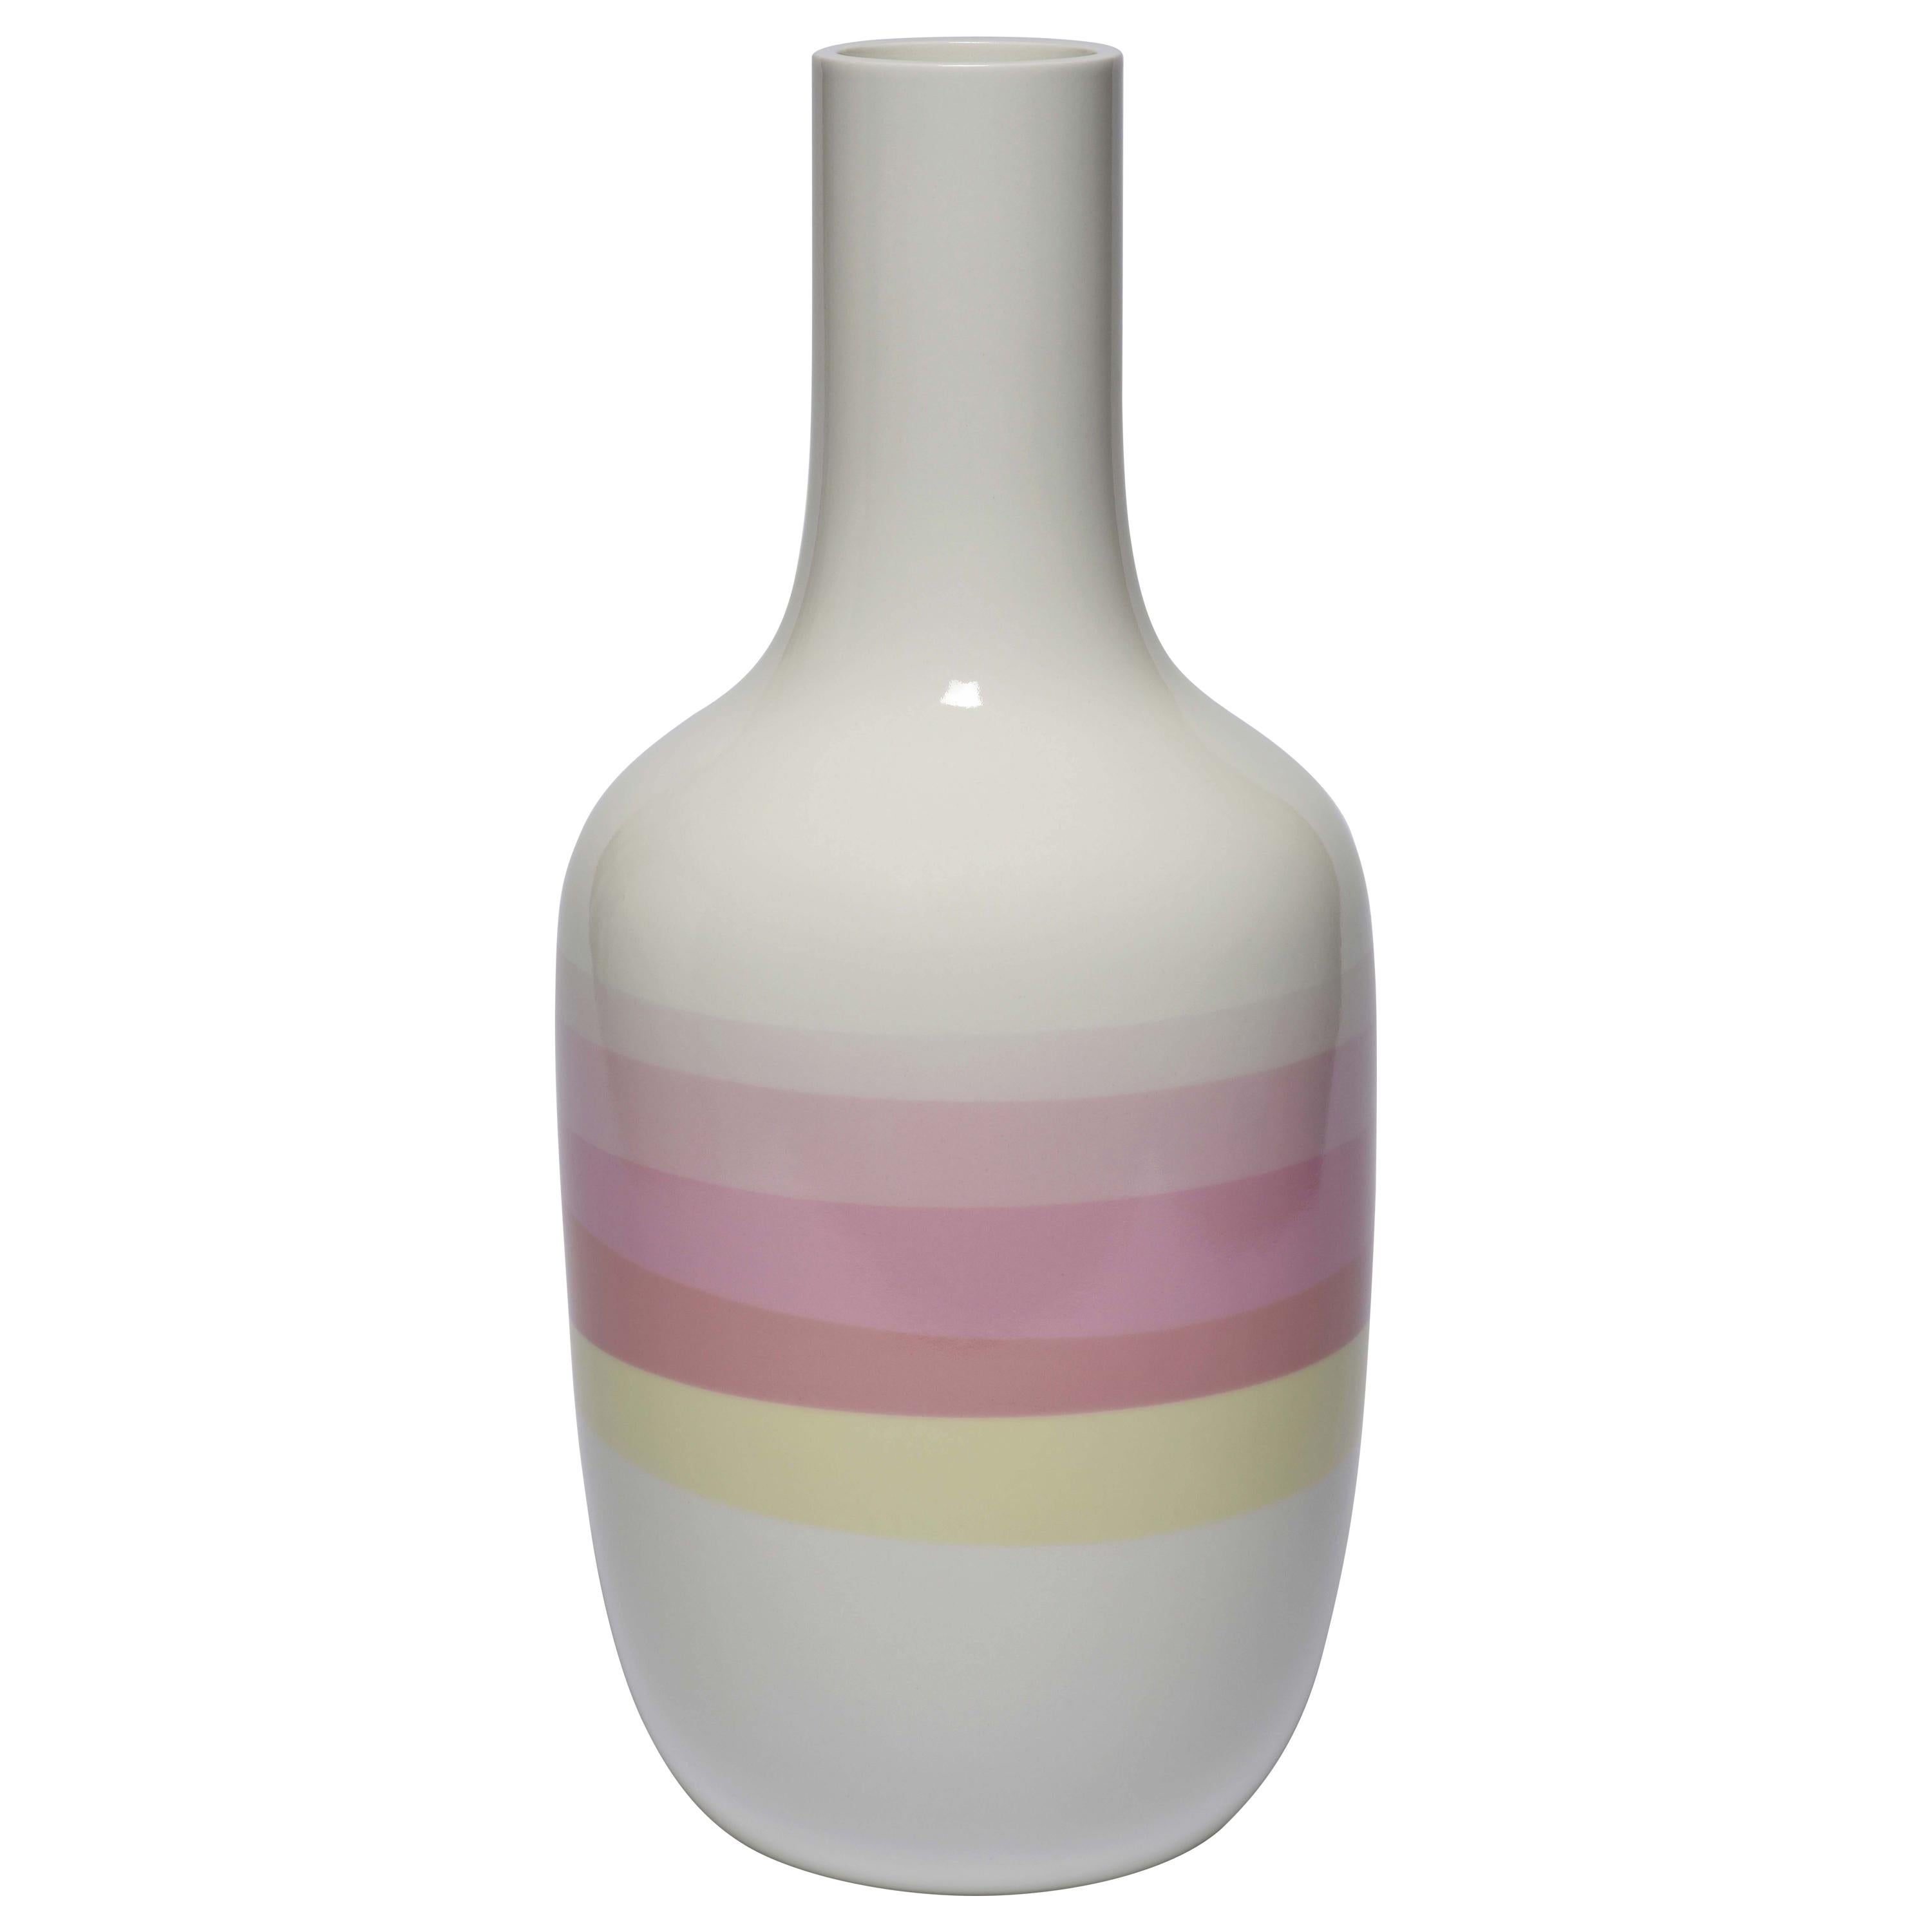 Scholten & Baijings 2.2 Vase in Porcelain by Manufacture Nationale de Sèvres For Sale